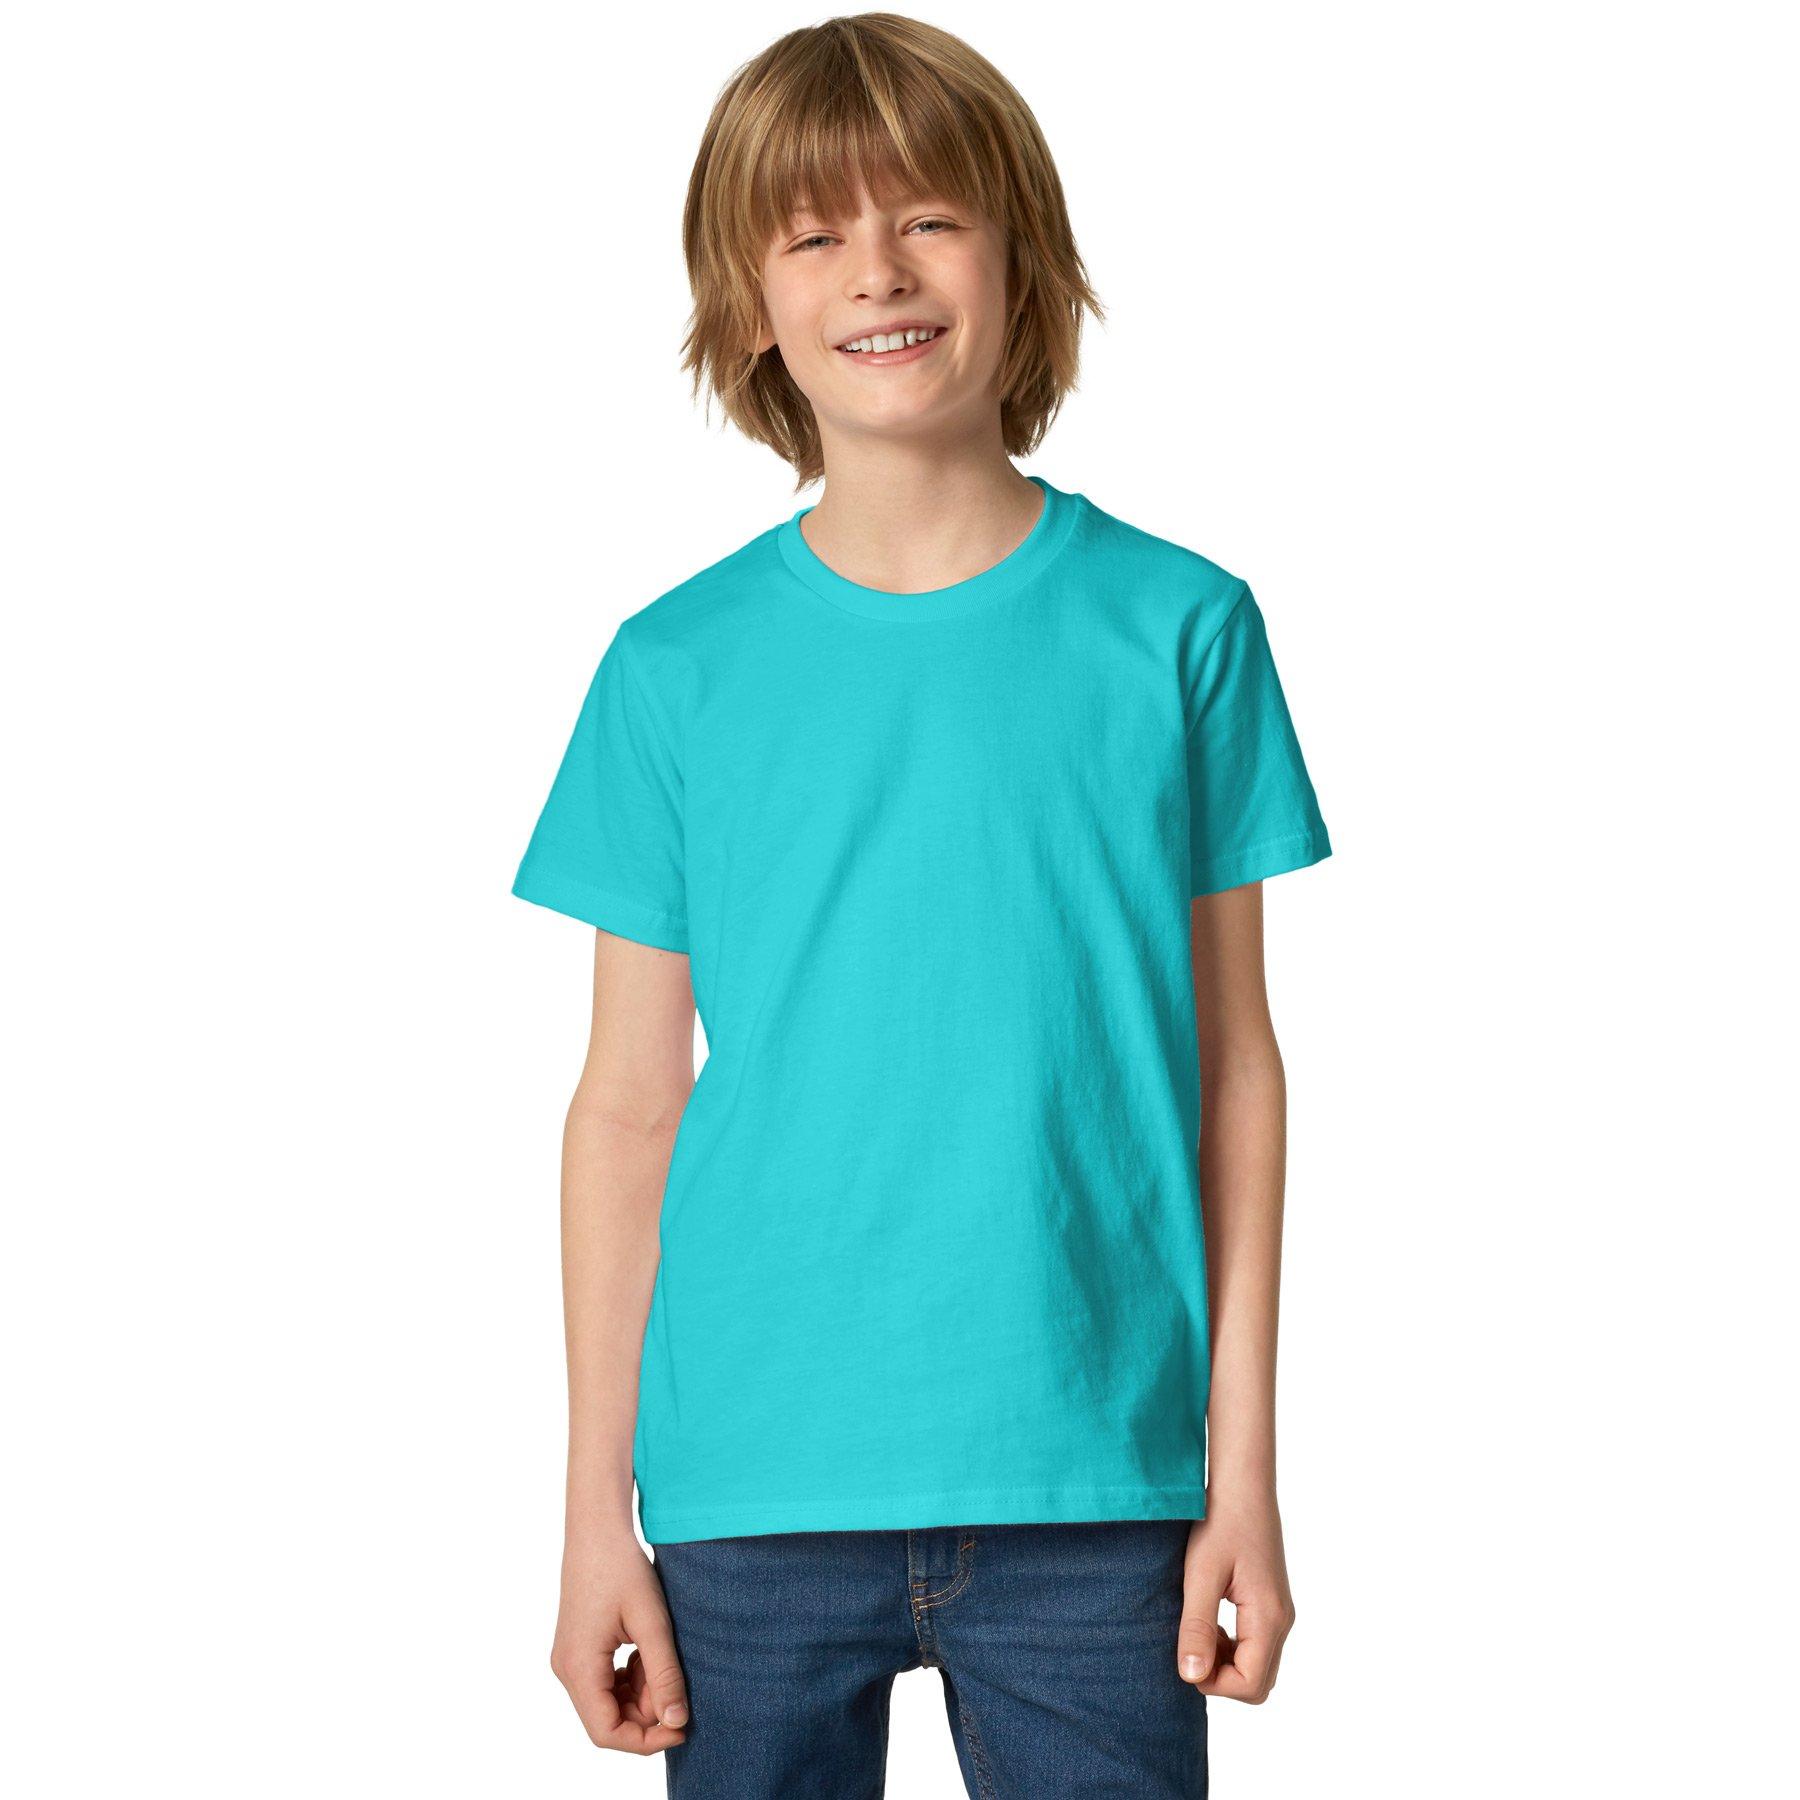 T-shirt Kinder Jungen Türkisblau 116 von Tectake